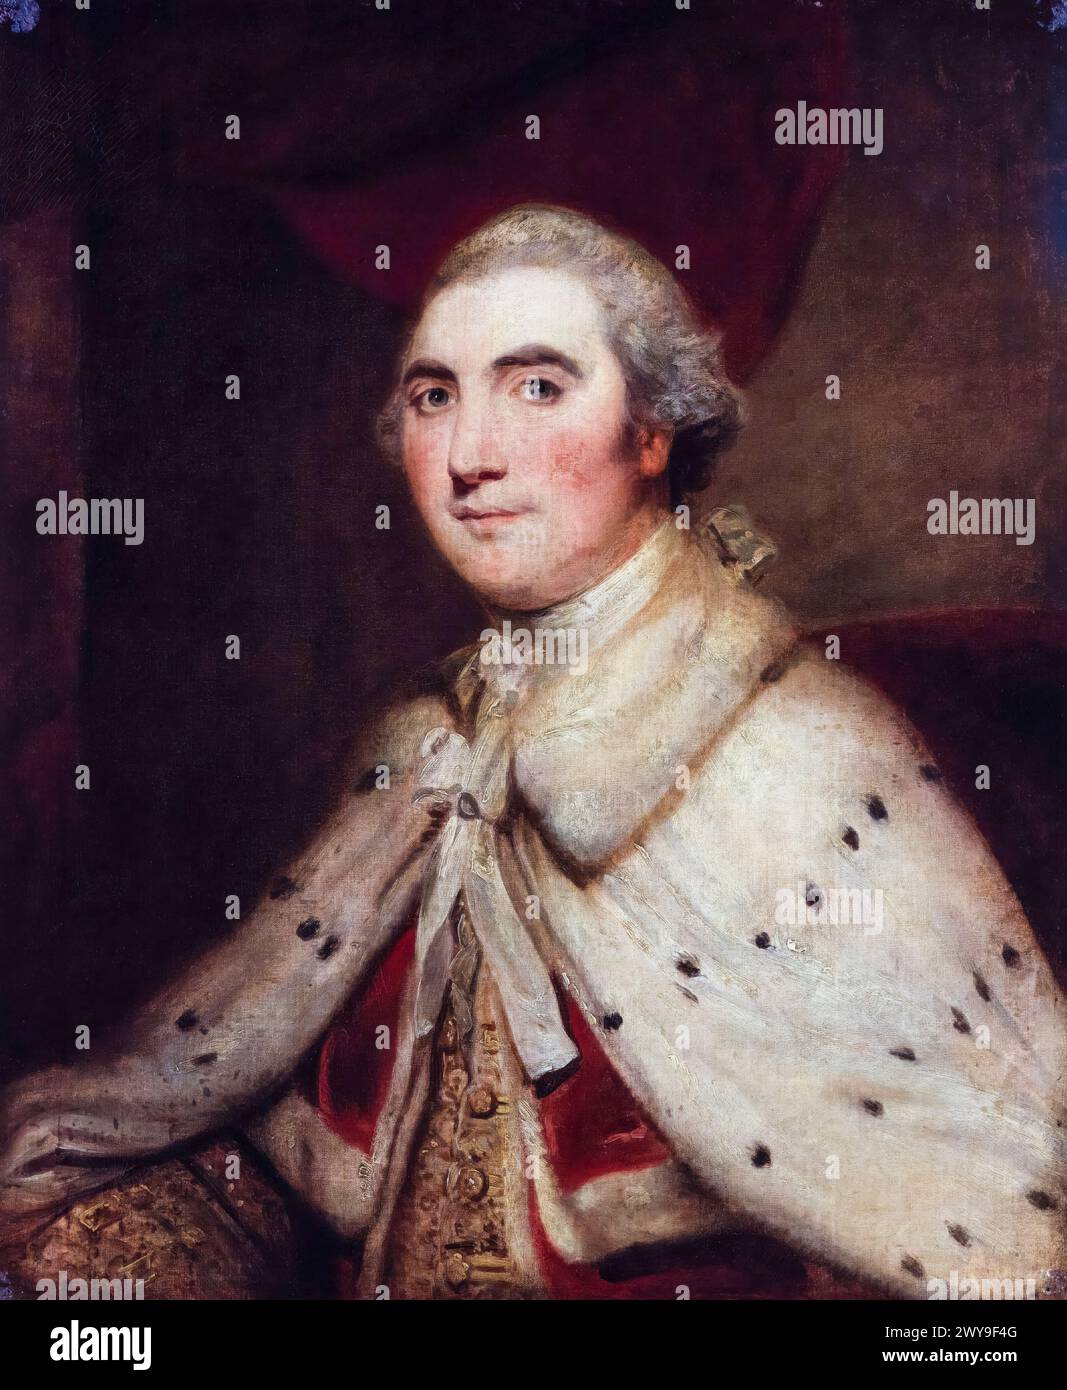 William Petty, II conte di Shelburne (1737-1805), politico Whig anglo-irlandese e primo ministro della Gran Bretagna 1782-1783, ritratto dipinto ad olio su tela dopo Sir Joshua Reynolds, 1766-1799 Foto Stock